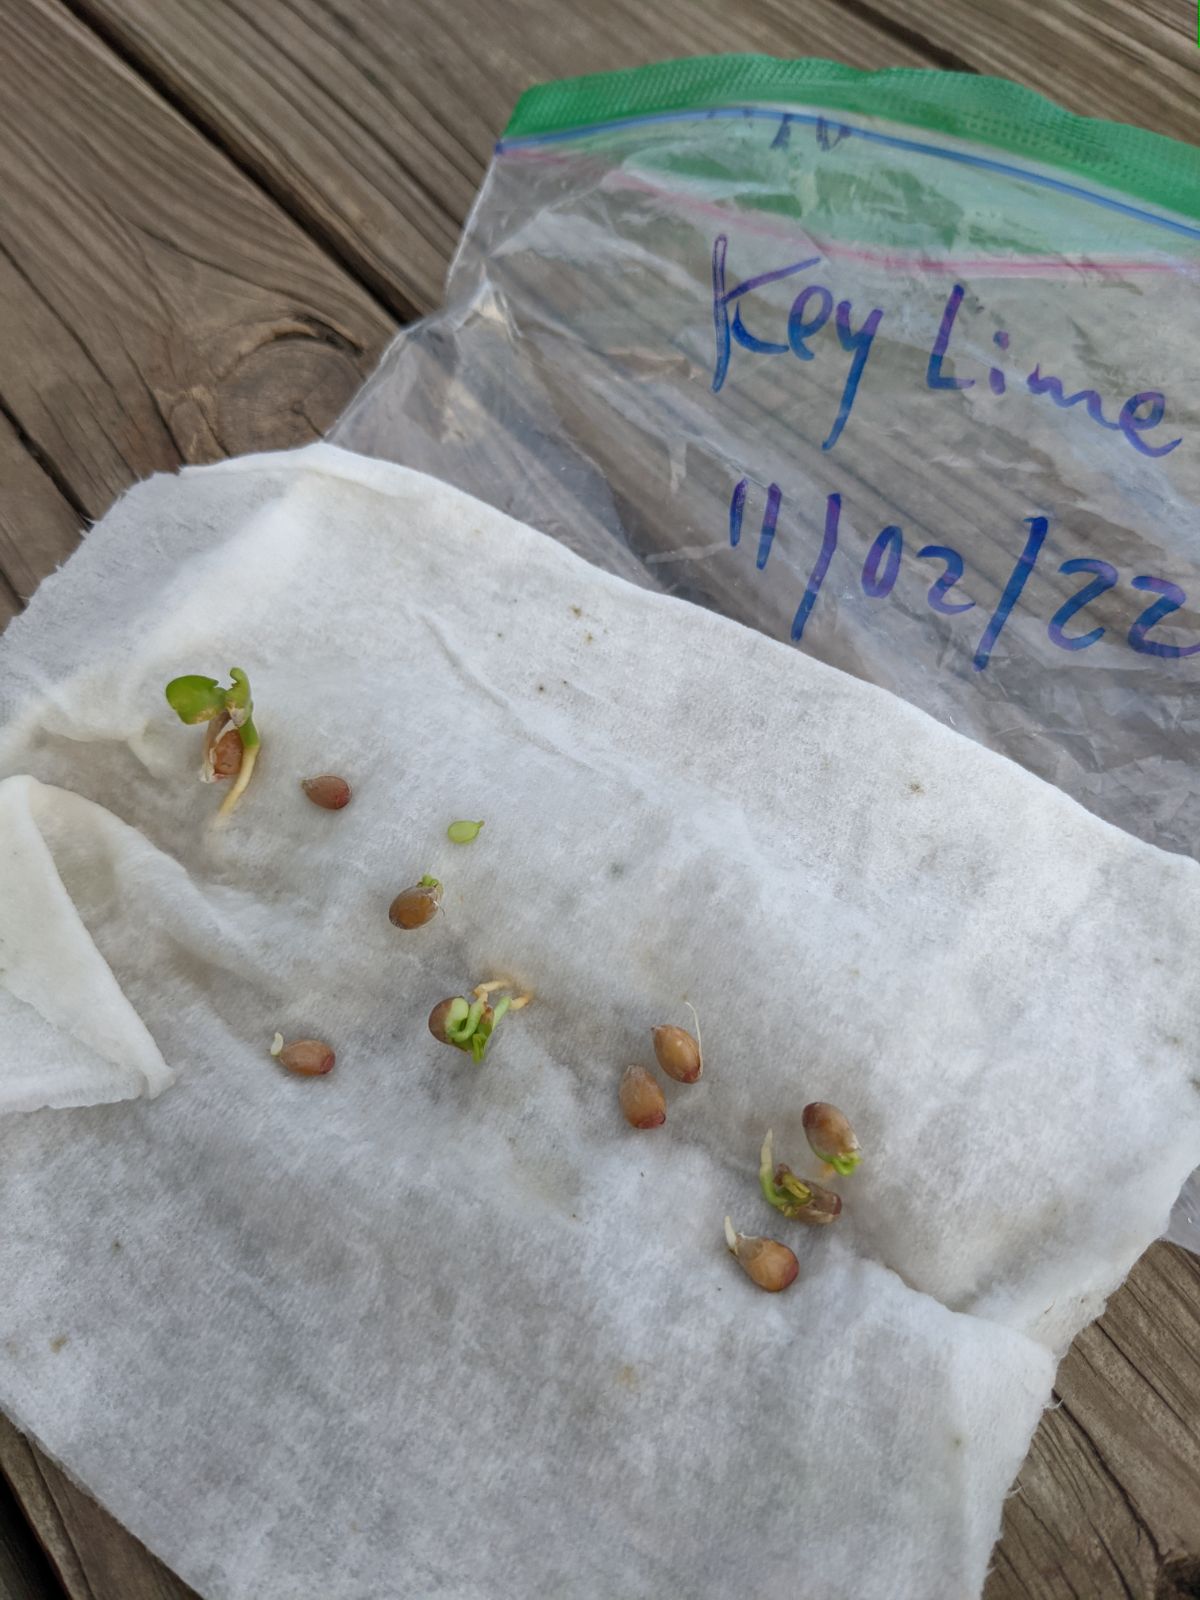 Key lime tree seedlings germinated in plastic baggie